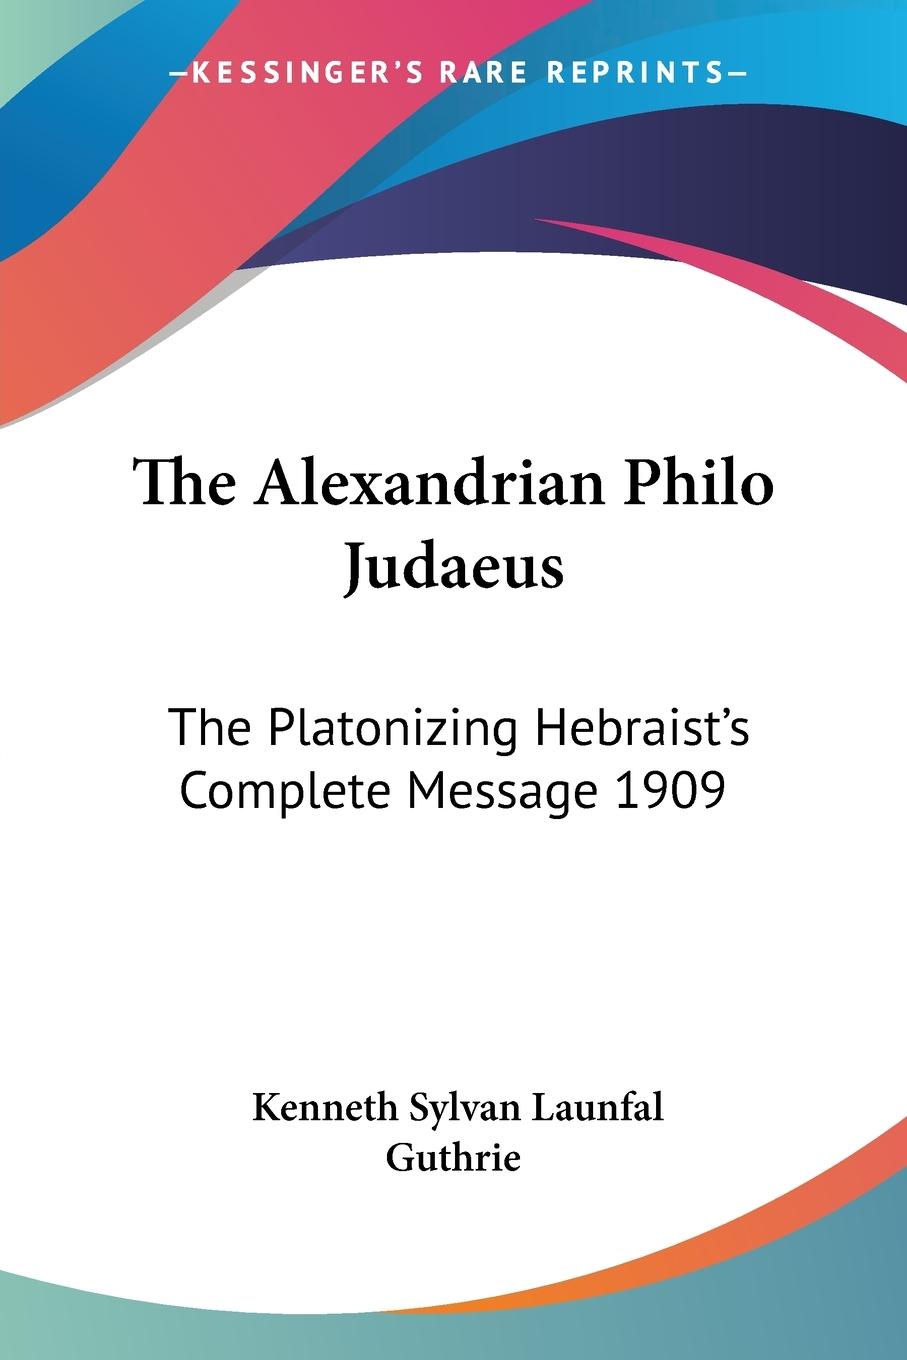 The Alexandrian Philo Judaeus - Guthrie, Kenneth Sylvan Launfal